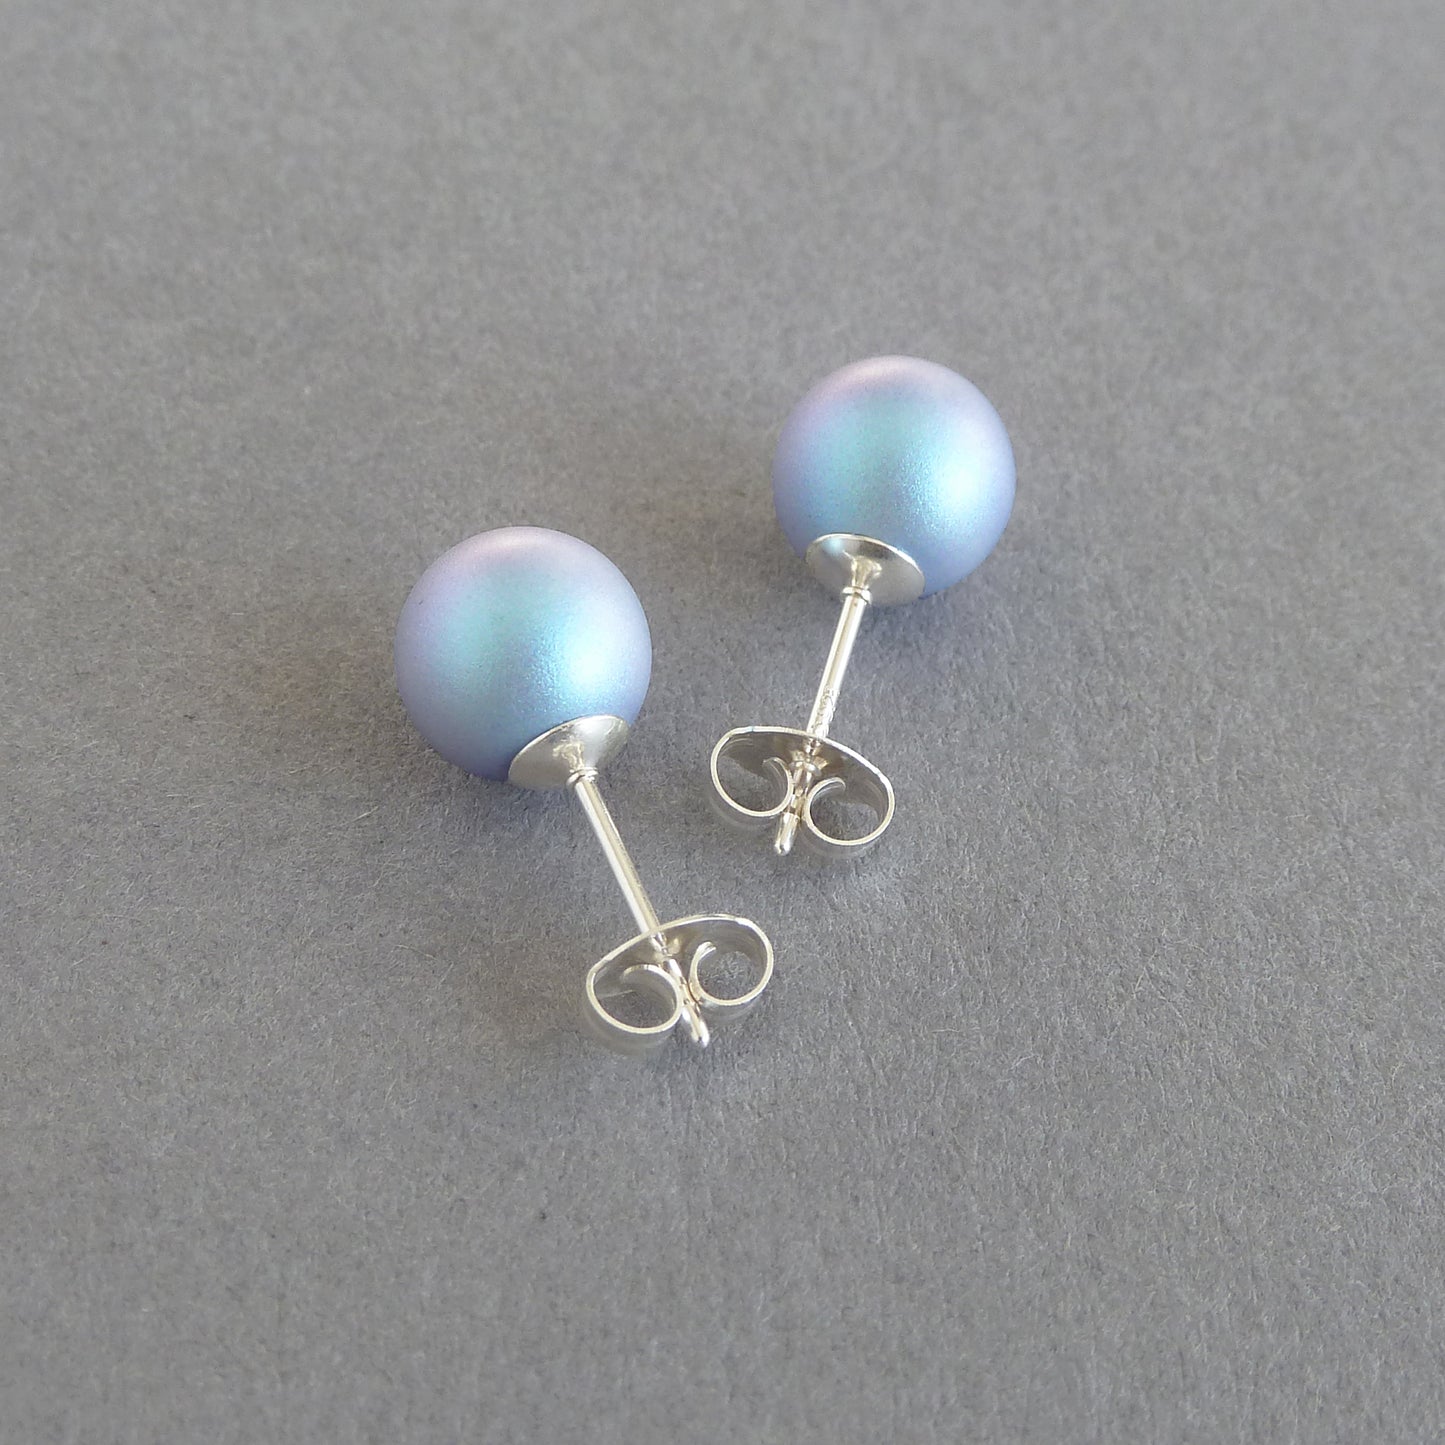 8mm pale blue stud earrings